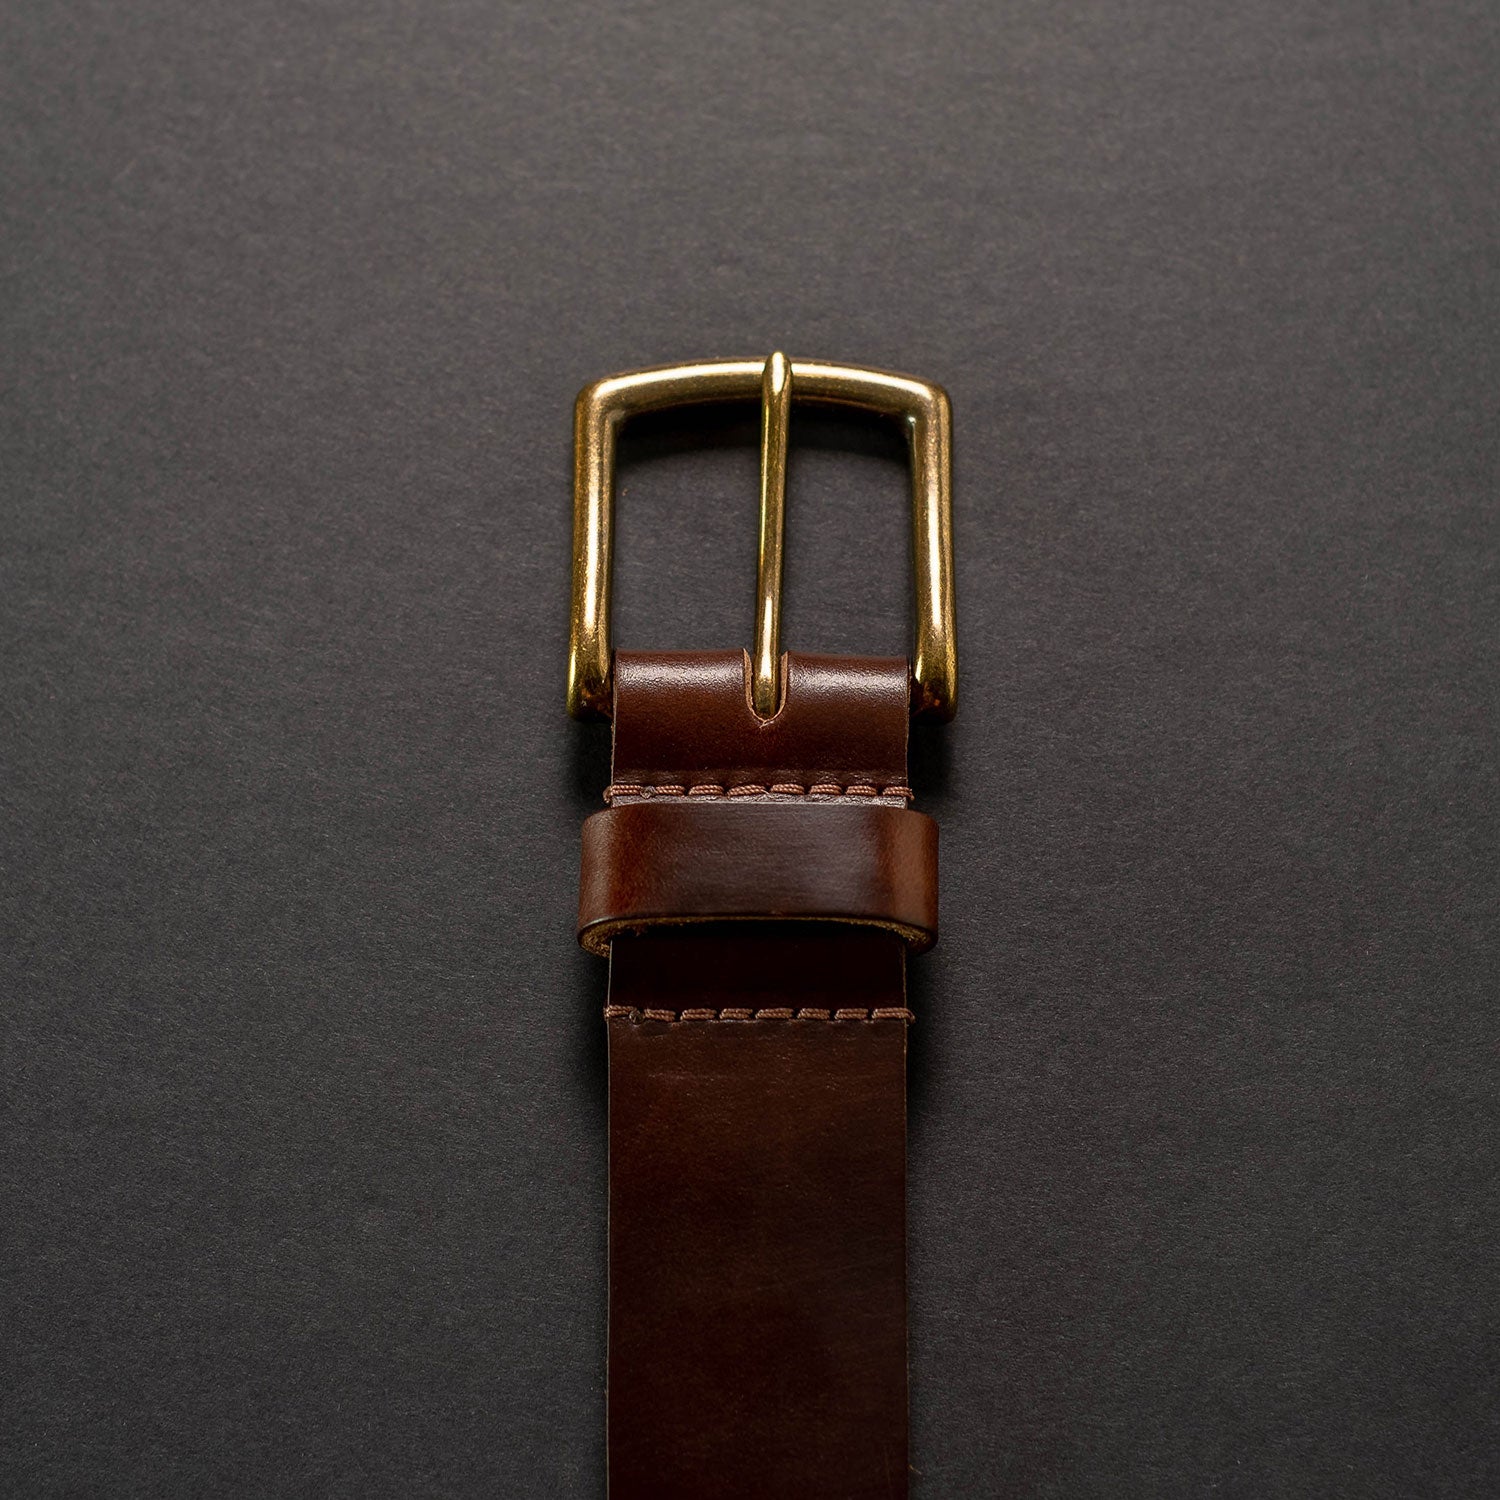 ashland leather belt